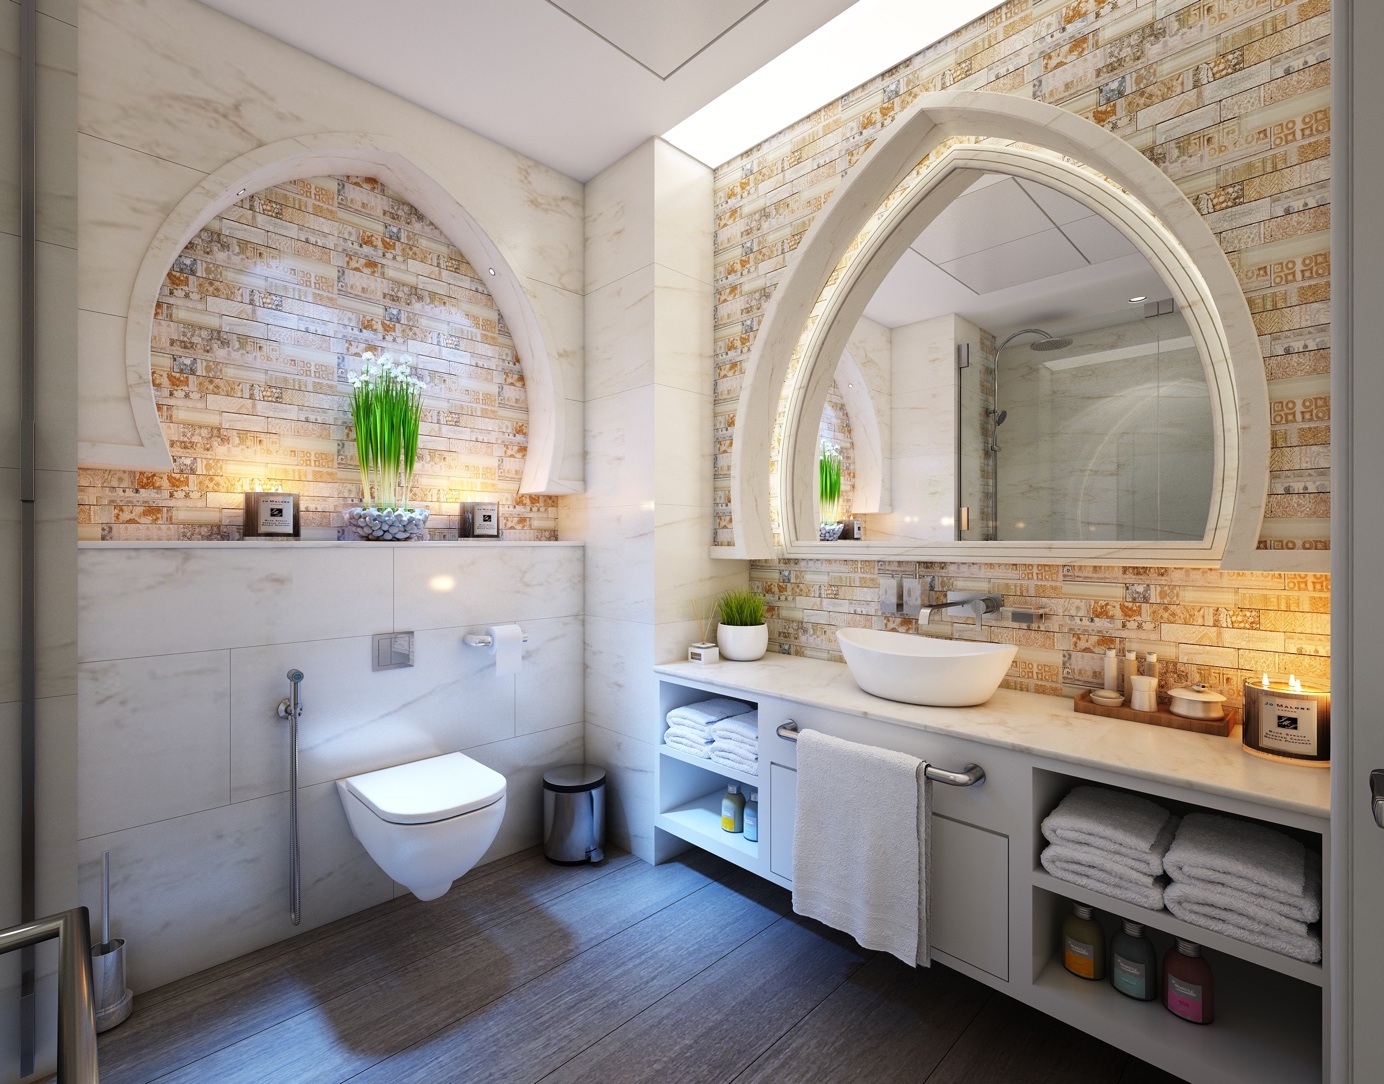 Toilette Wc avec murs en marbre et brique